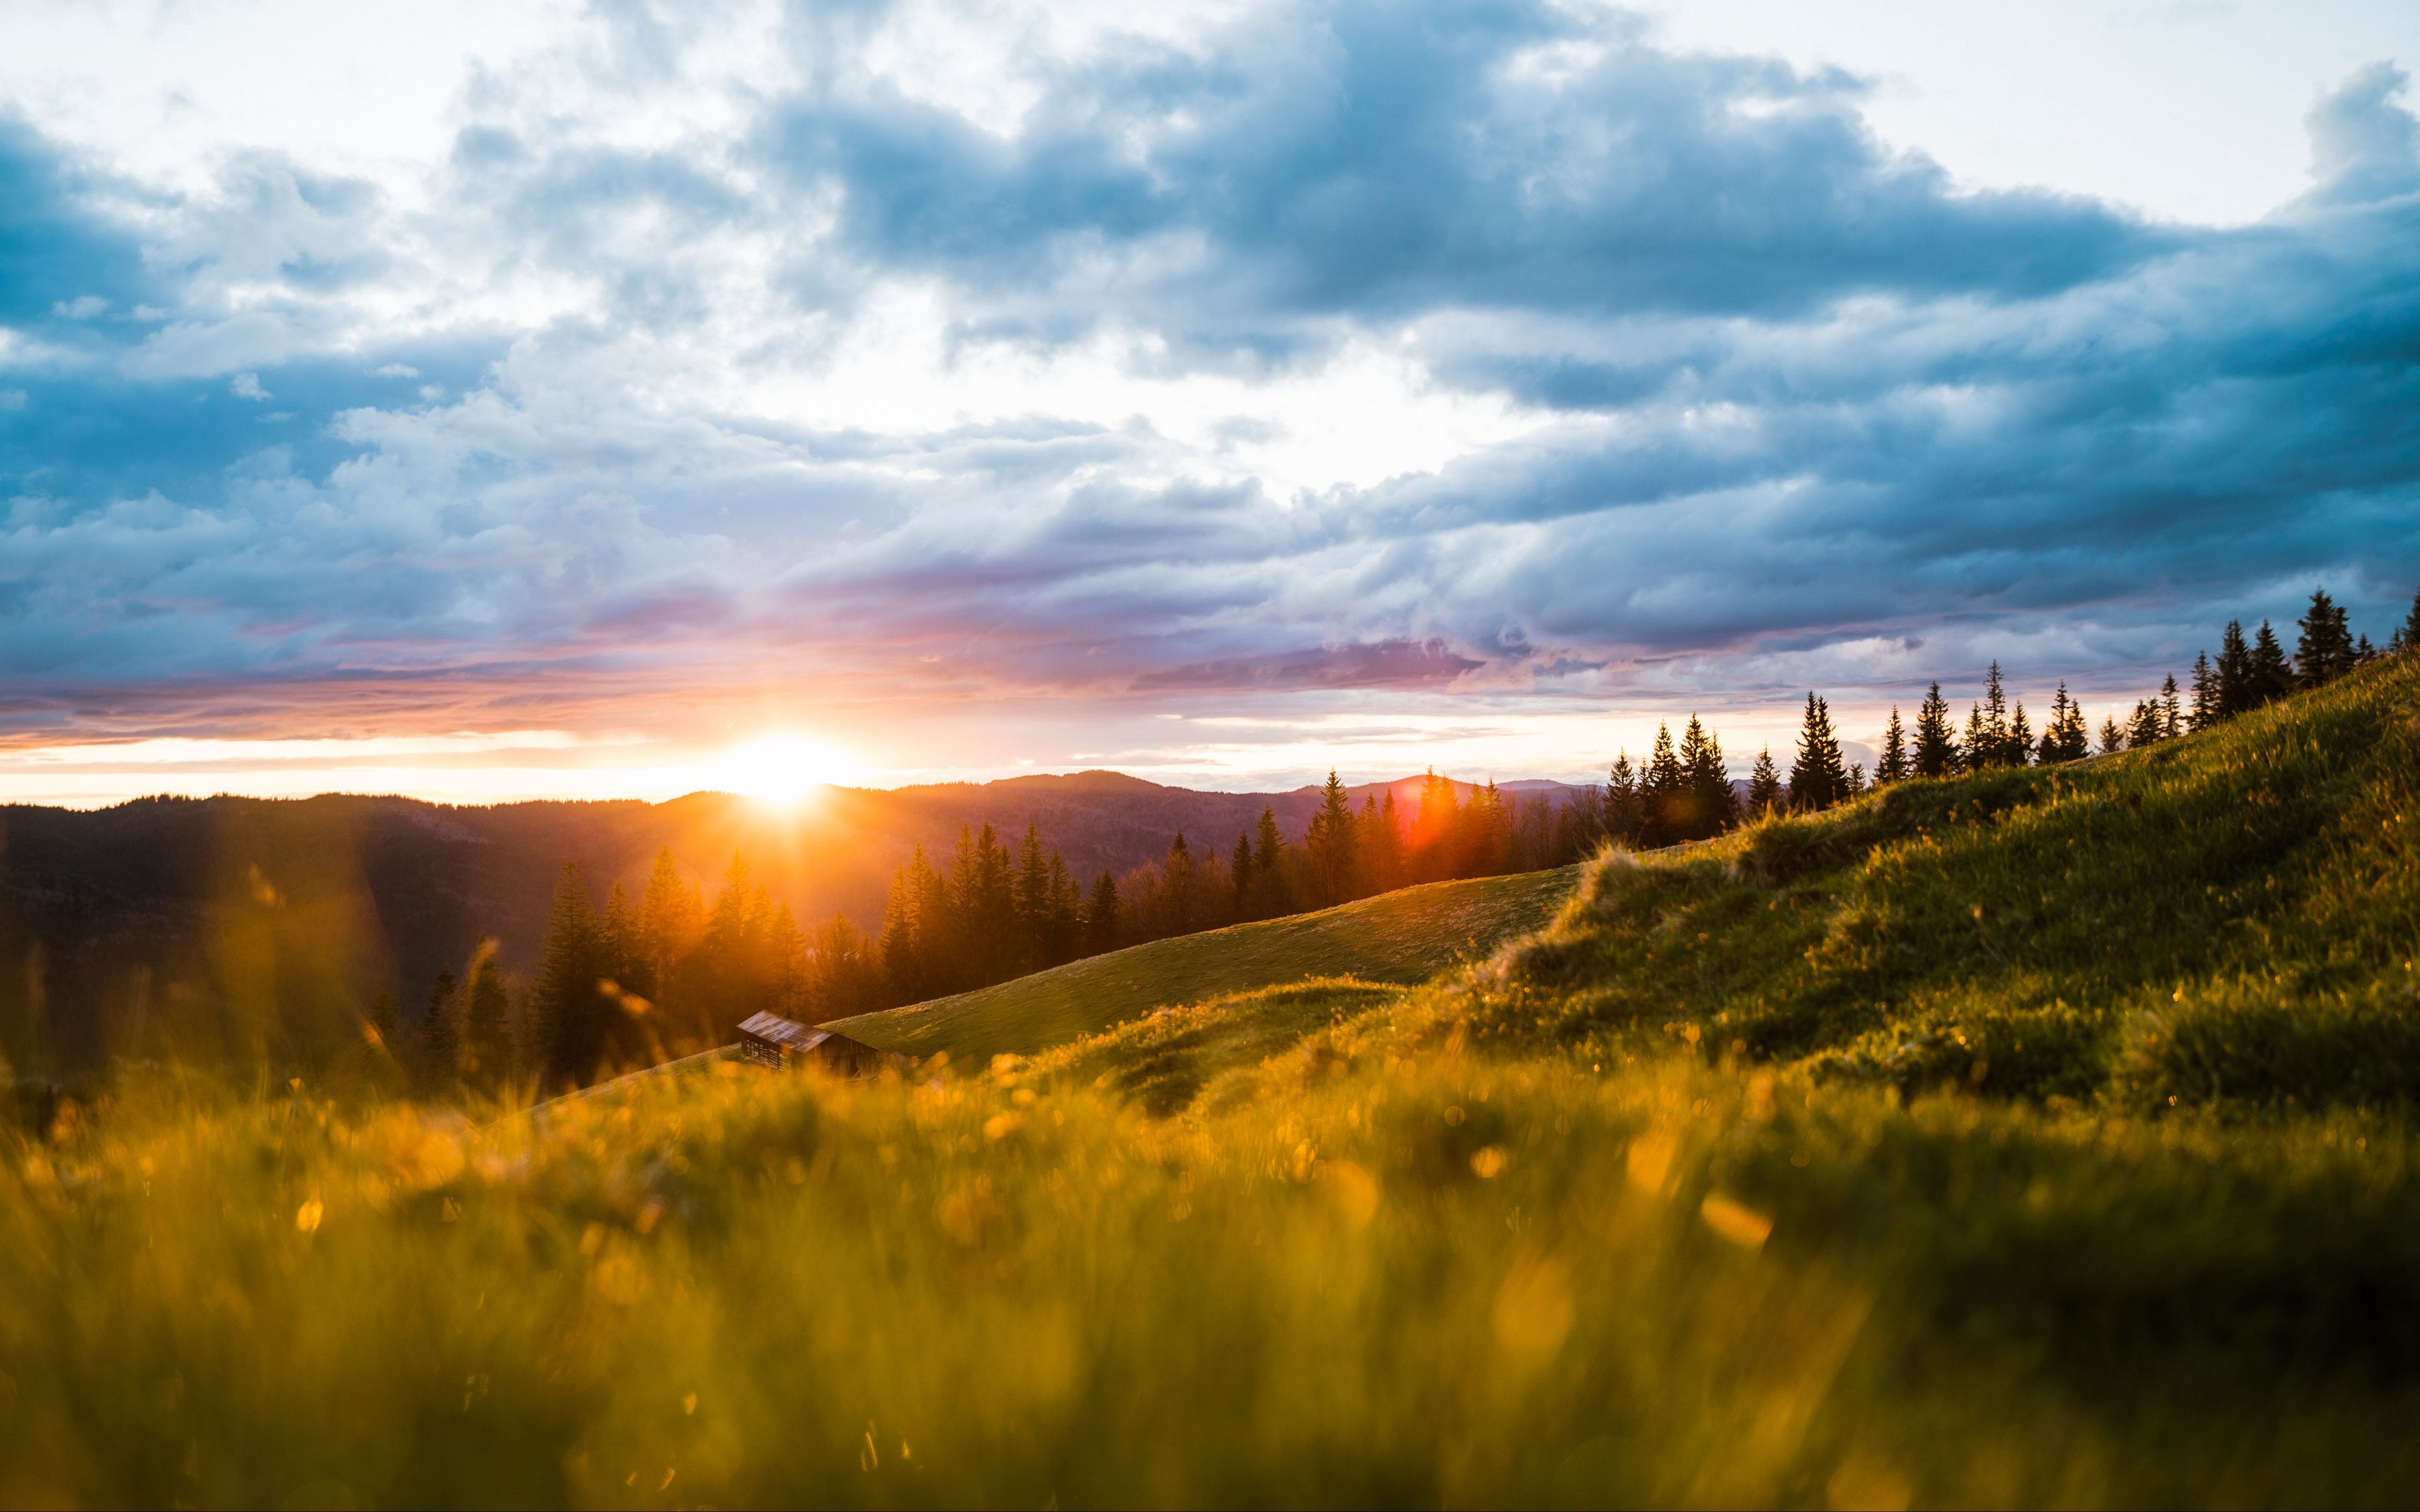 Hãy chiêm ngưỡng khung cảnh đầy ấn tượng của đồi núi, mặt trời và đồng cỏ trong hình nền 3840x2400 tuyệt đẹp này. Hình ảnh thật sự tuyệt vời này sẽ giúp bạn tận hưởng những khoảnh khắc thanh tịnh và tràn đầy niềm đam mê. Hãy để tâm hồn của bạn được thảnh thơi trong thiên nhiên.